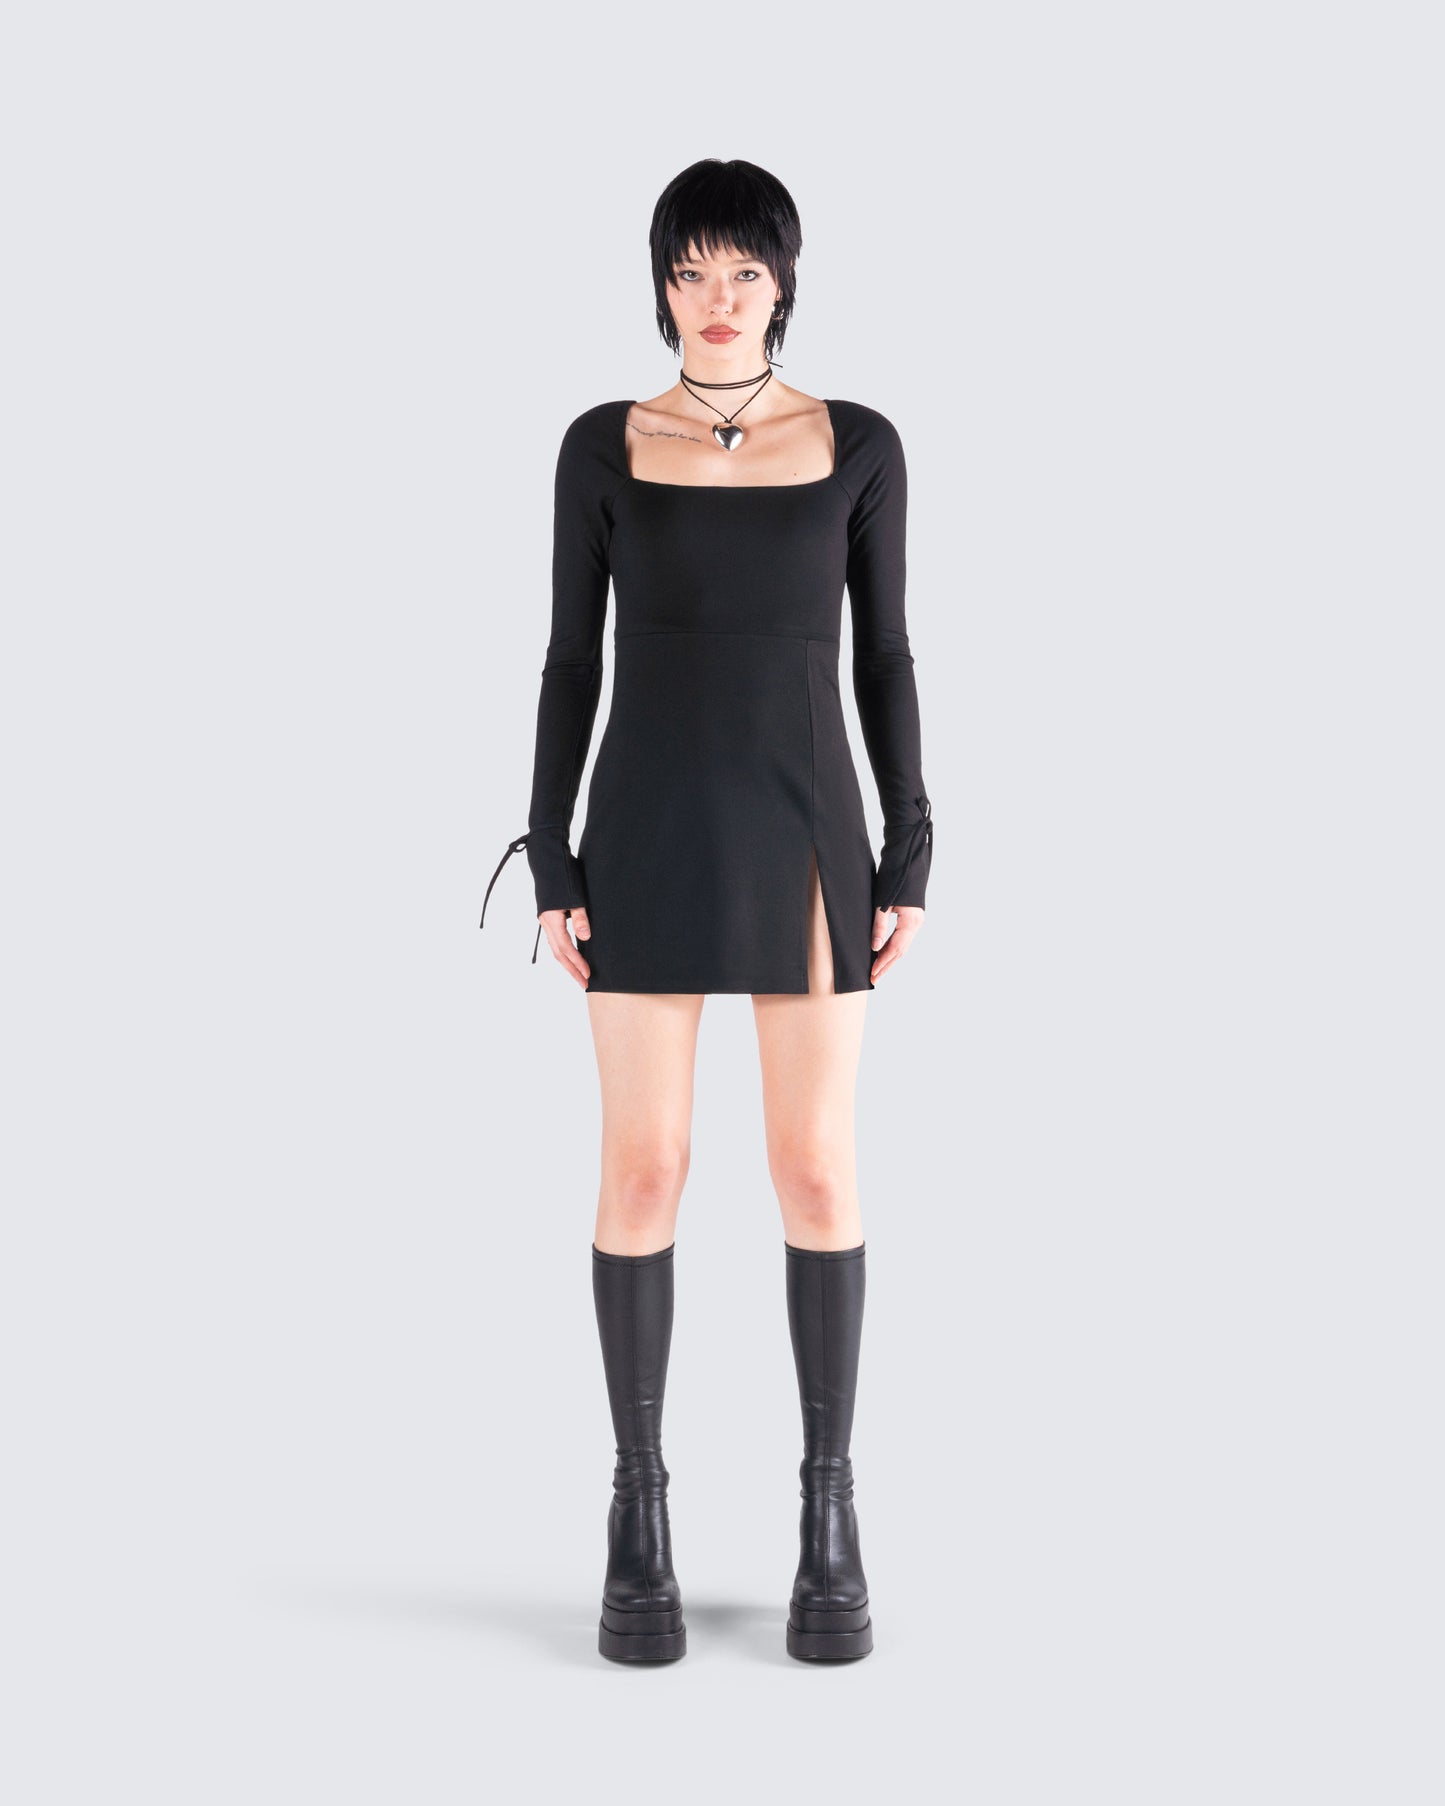 Kesia Black Mini Dress